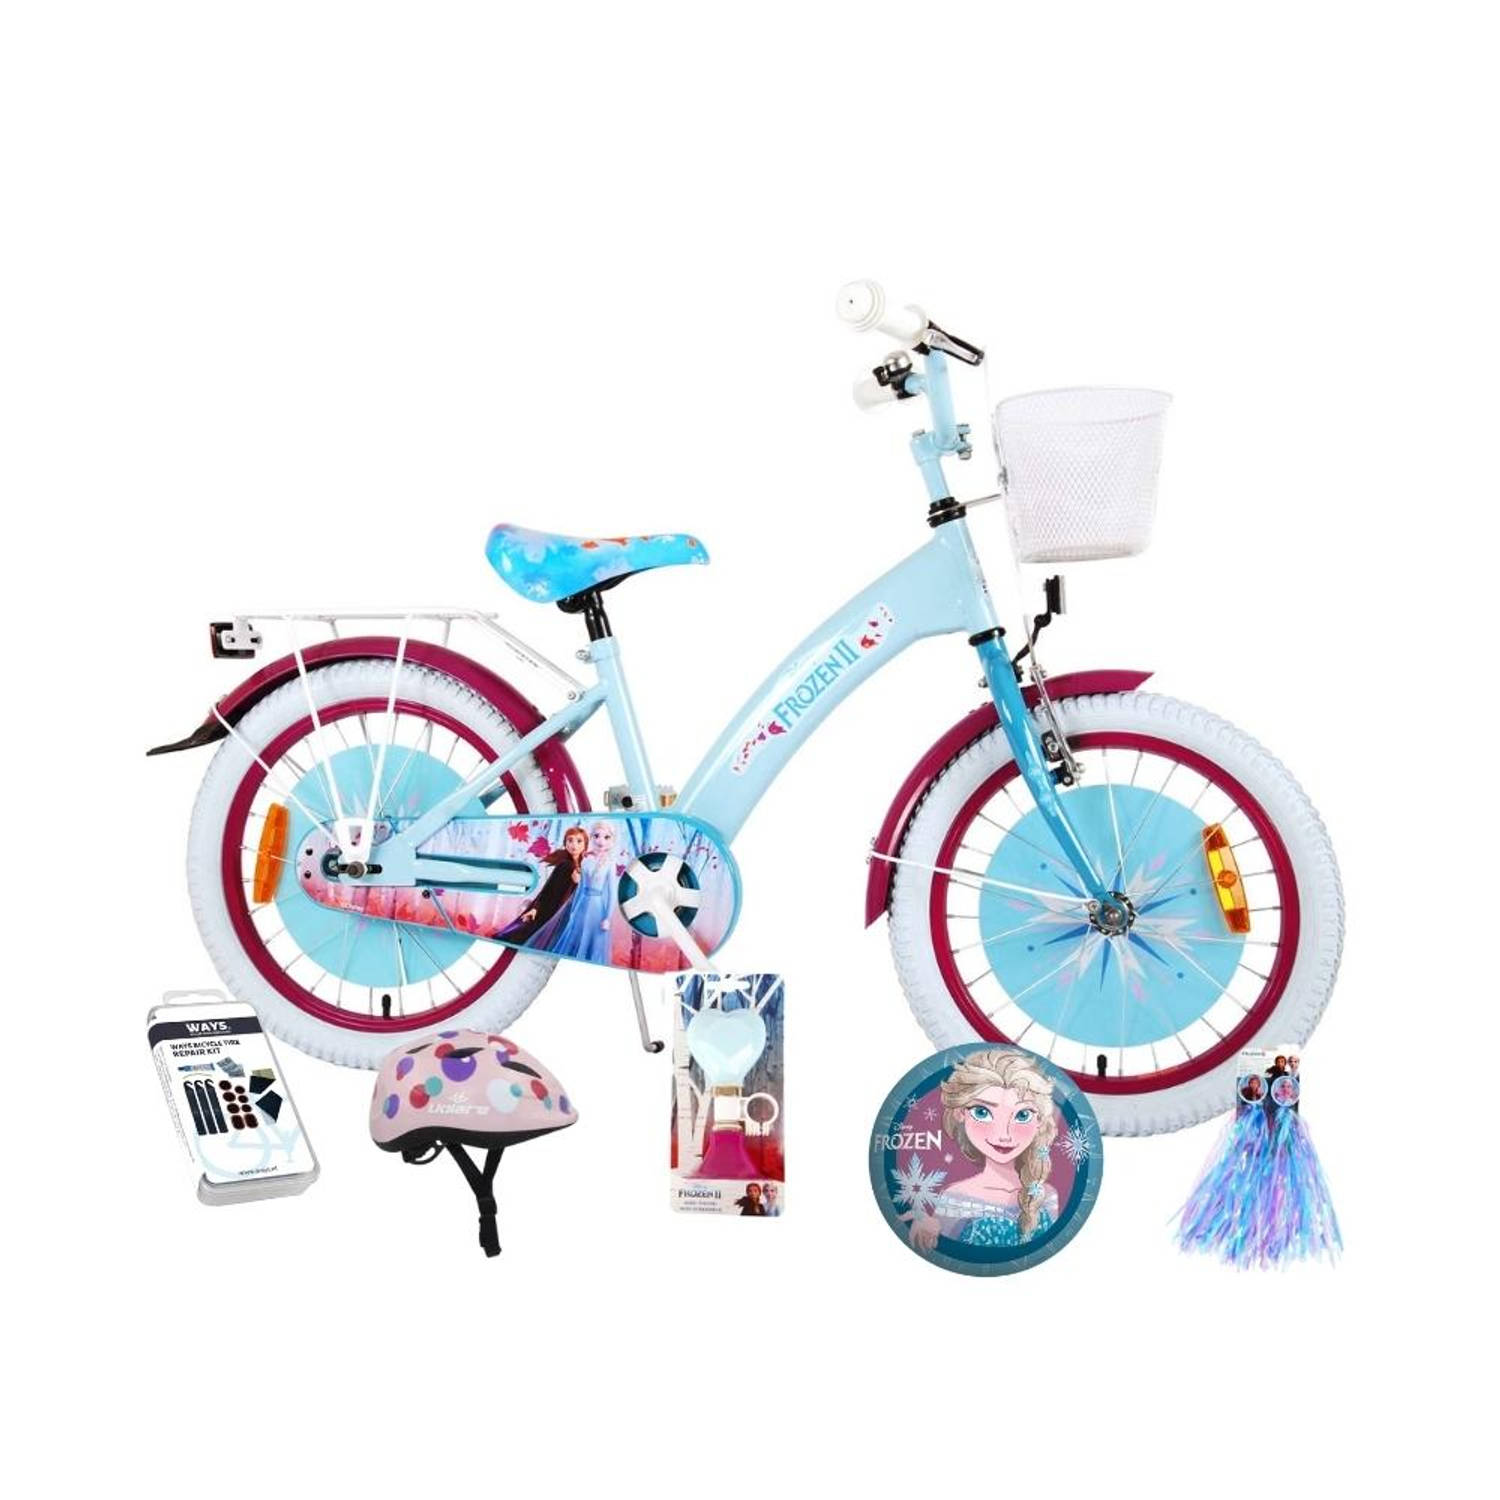 Schatting kom twintig Volare Kinderfiets Disney Frozen II - 18 inch - Blauw/Paars - Inclusief  fietshelm + accessoires | Blokker